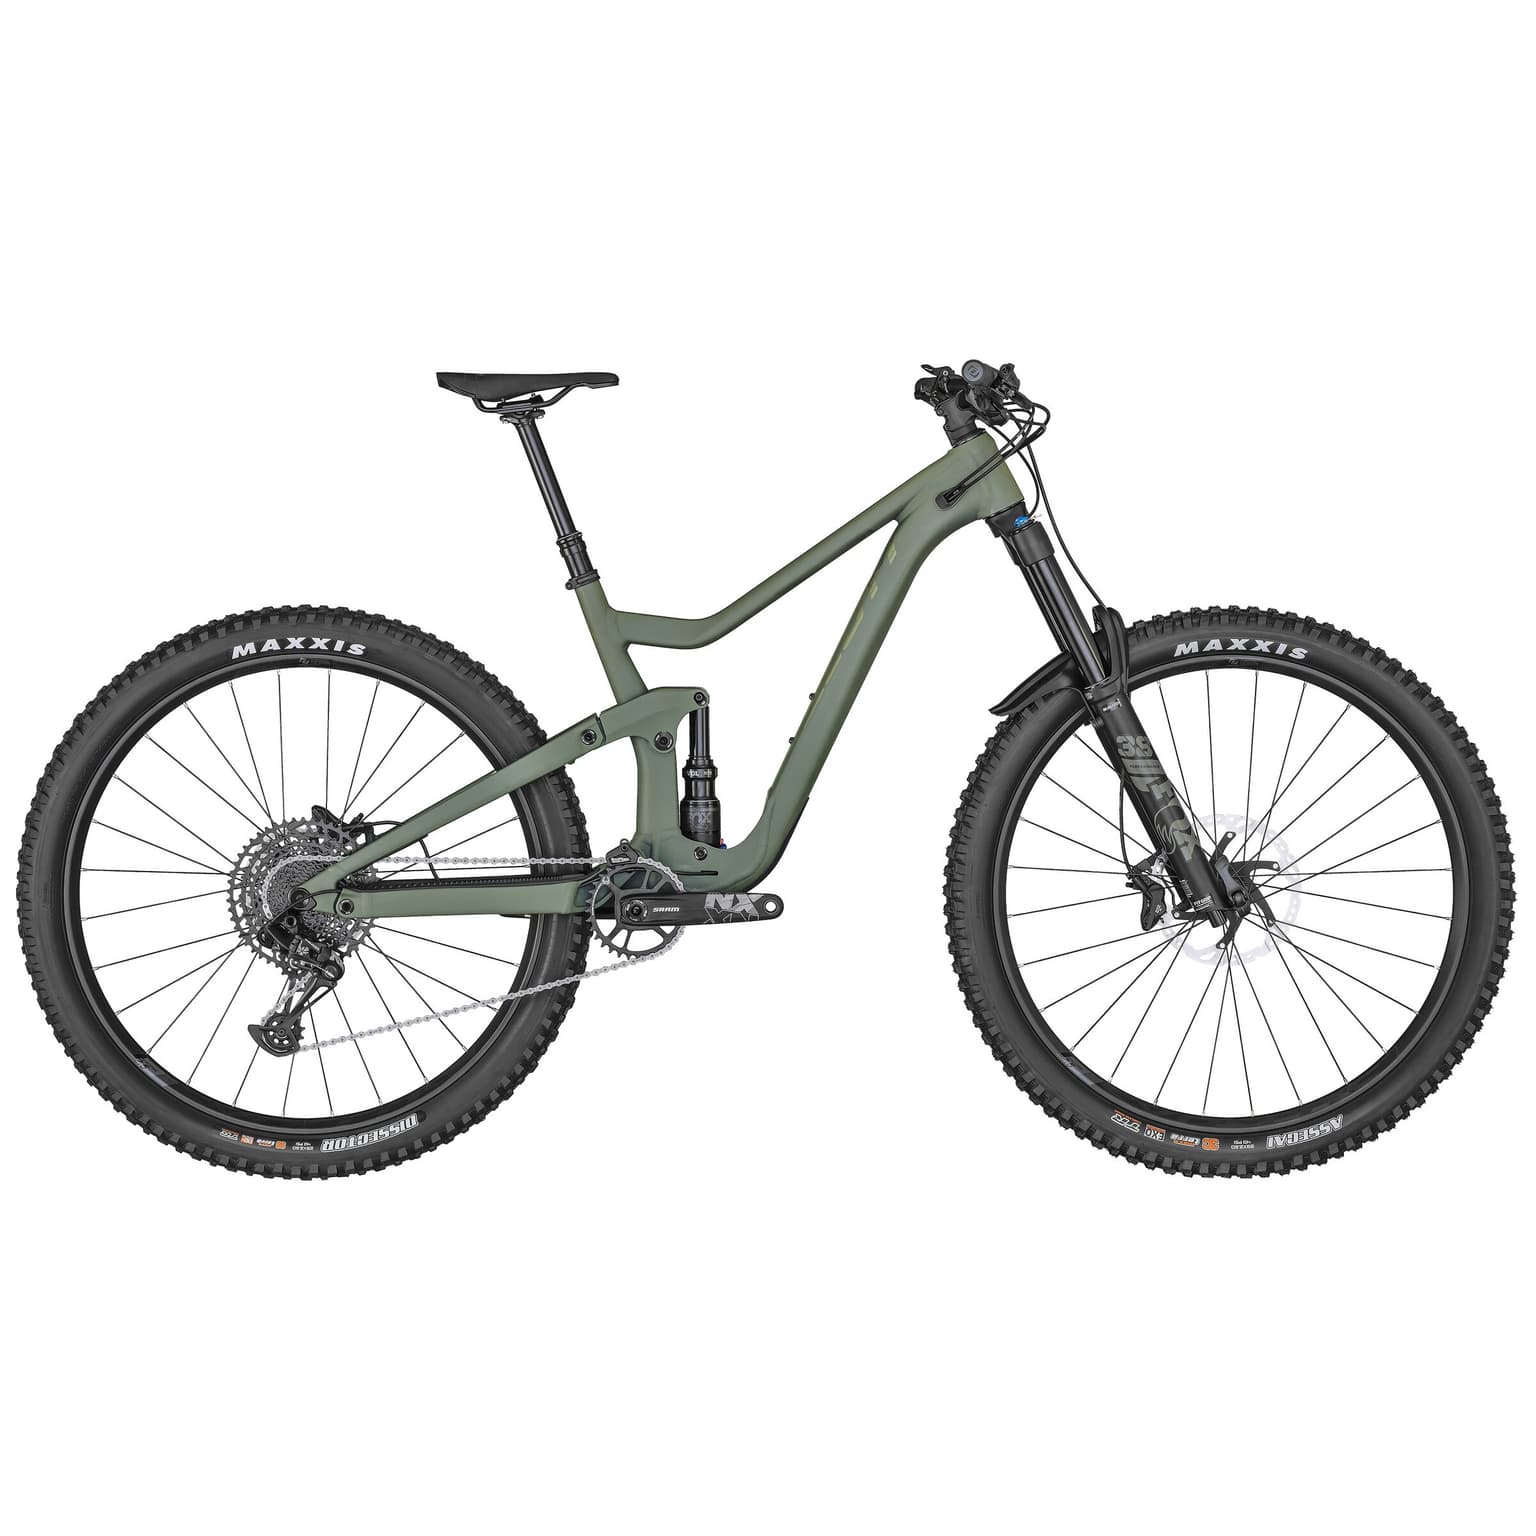 Scott Scott Ransom 920 29 Mountain bike Enduro (Fully) khaki 1